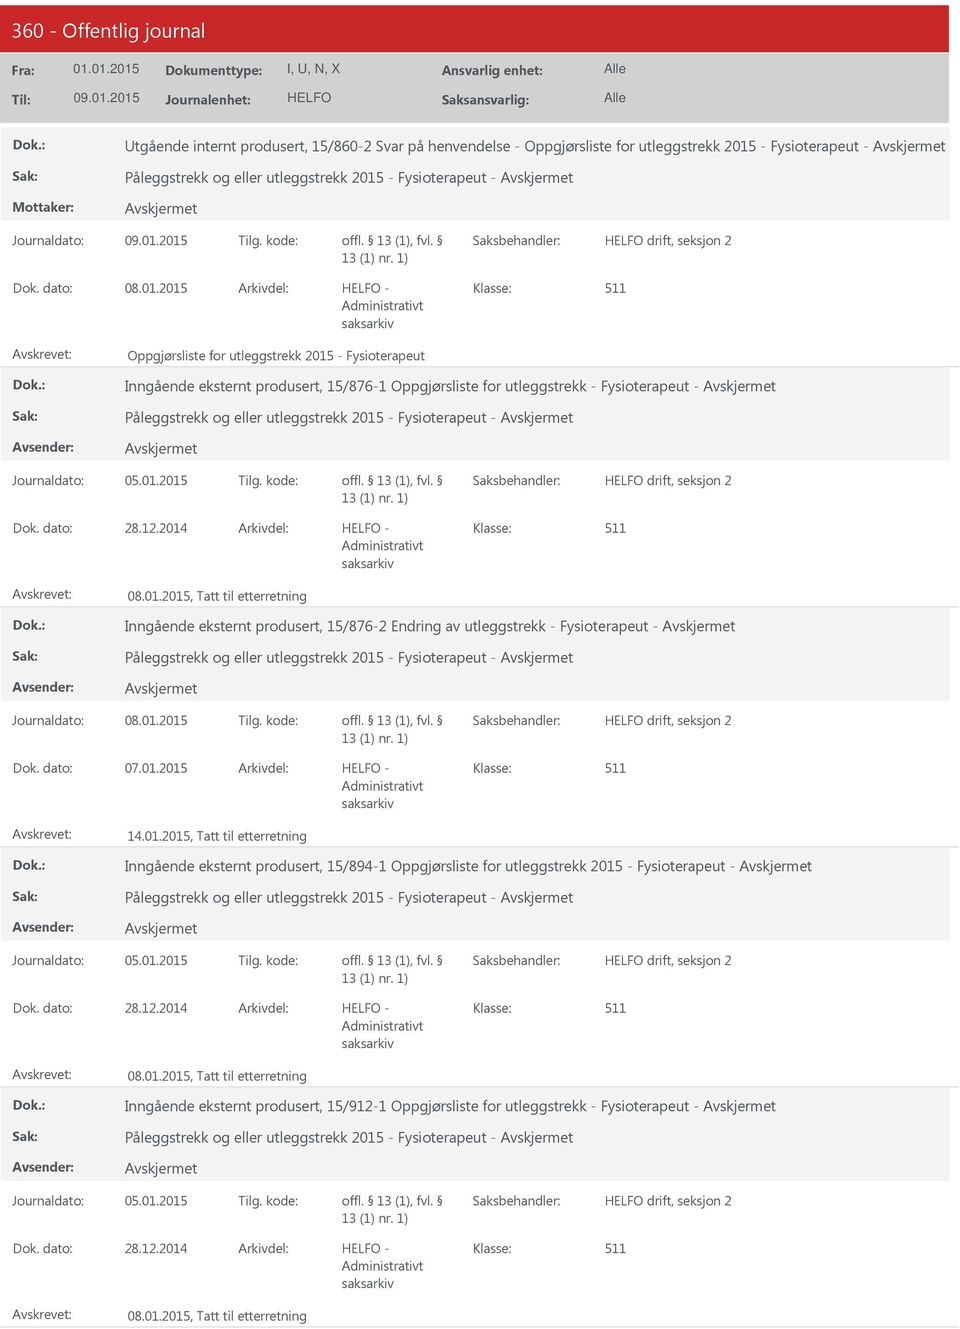 2015 - Oppgjørsliste for utleggstrekk 2015 - Fysioterapeut Inngående eksternt produsert, 15/876-1 Oppgjørsliste for utleggstrekk - Fysioterapeut - Påleggstrekk og eller utleggstrekk 2015 -